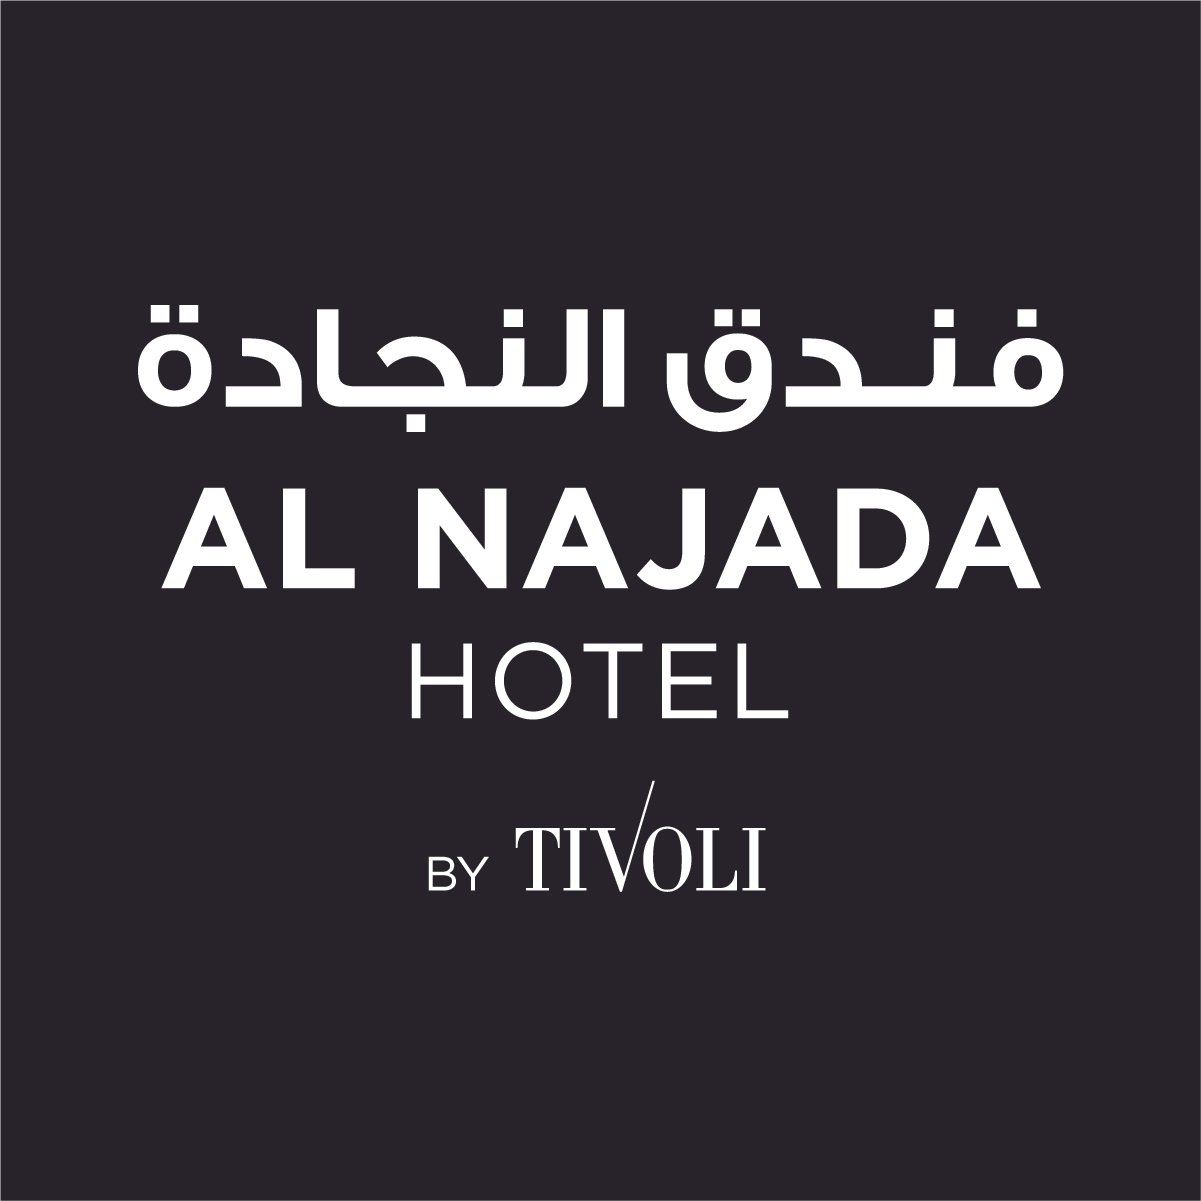 2155al_najada_hotel_logo_.jpg